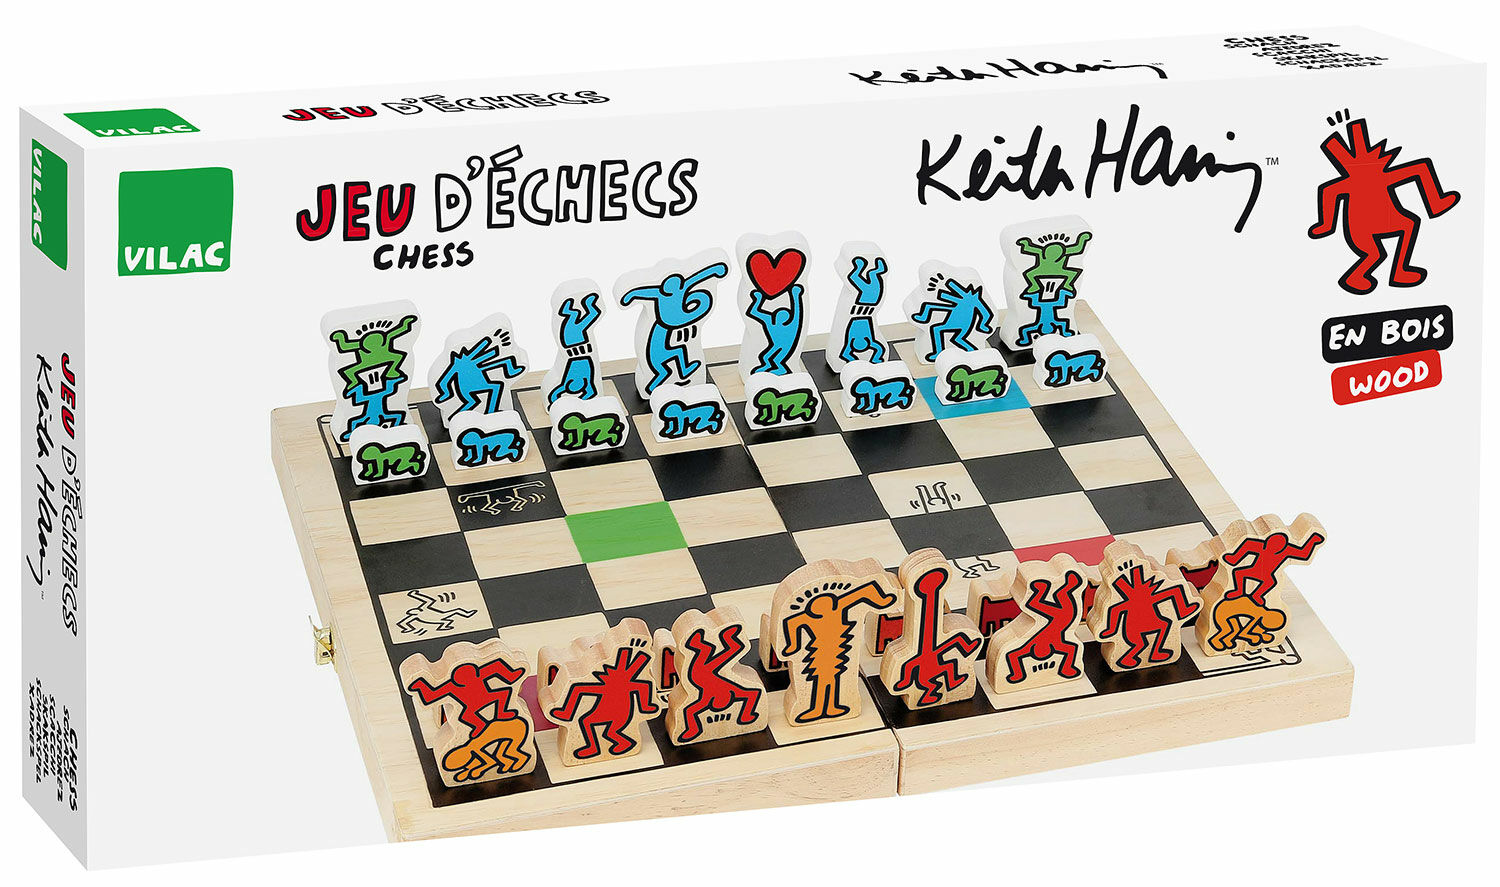 Jeu d'échecs "Keith Haring", version colorée